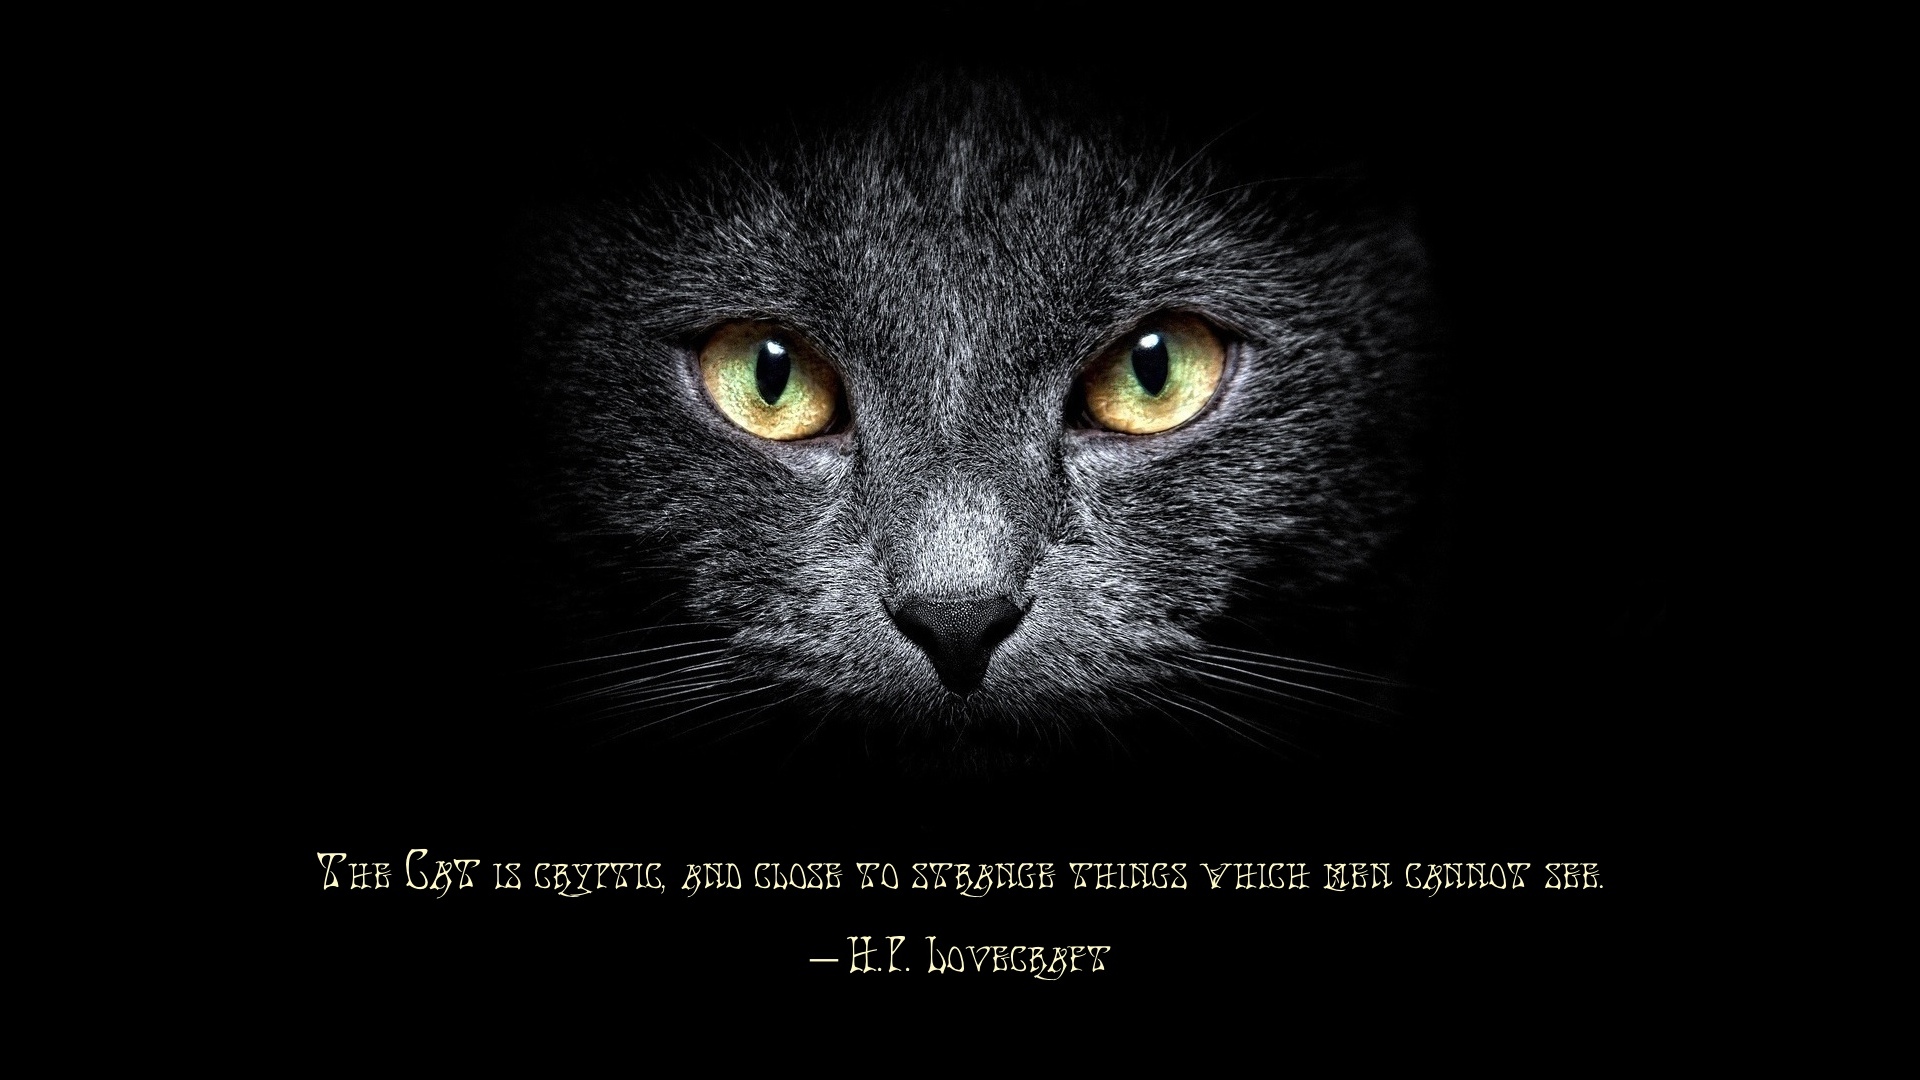 h p lovecraft, misc, quote, cat